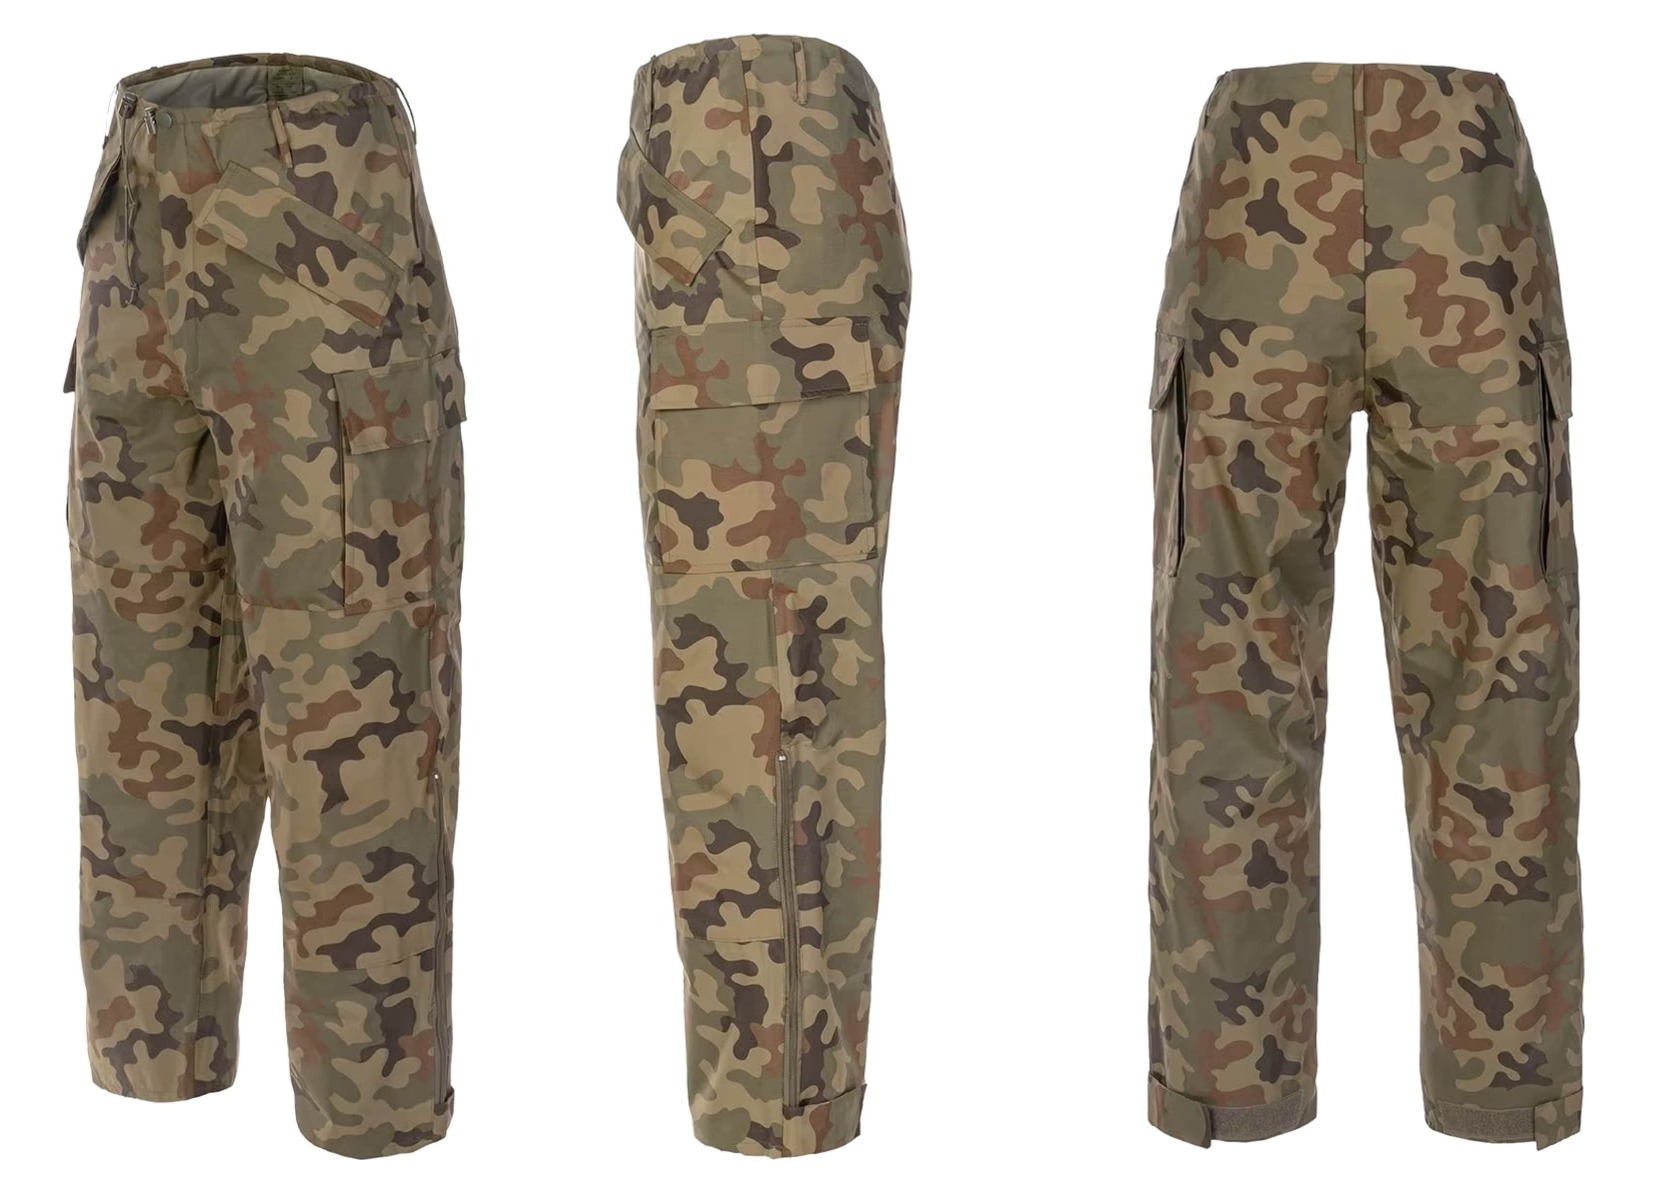 Zaščitite se pred dežjem s vrhunskimi nepremočljivimi vojaškimi hlačami Texar Grom PL Camo. Nepremočljive in vzdržljive, z vodnim stolpcem 10.000 mm. Na voljo v PL camo vzorcu. Kupite jih zdaj!